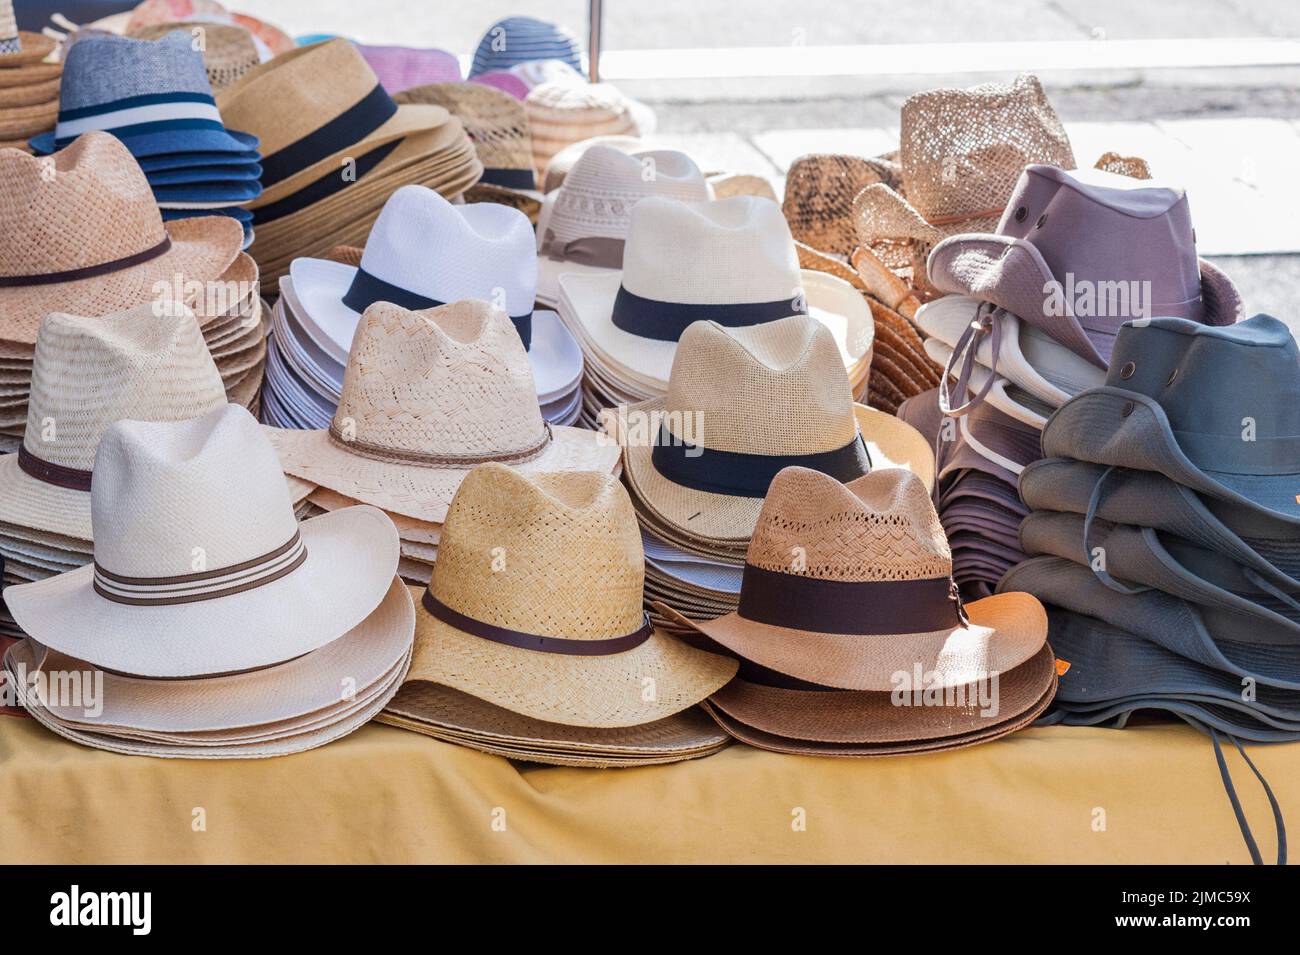 13 Lindos sombreros para un look de verano con mucho glamour